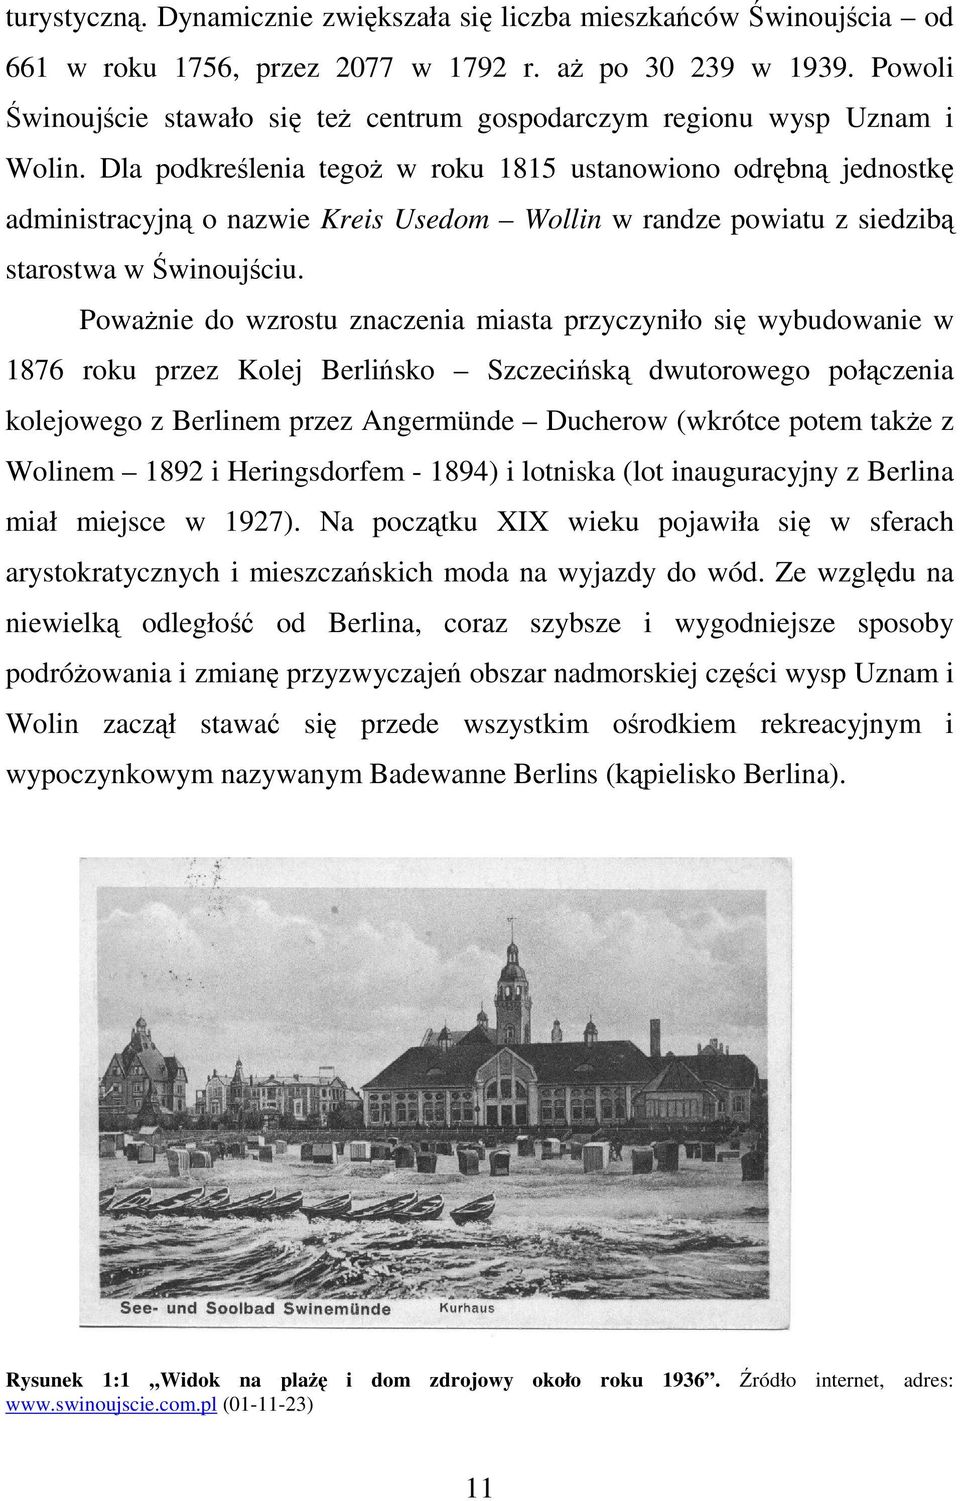 Dla podkreślenia tegoż w roku 1815 ustanowiono odrębną jednostkę administracyjną o nazwie Kreis Usedom Wollin w randze powiatu z siedzibą starostwa w Świnoujściu.